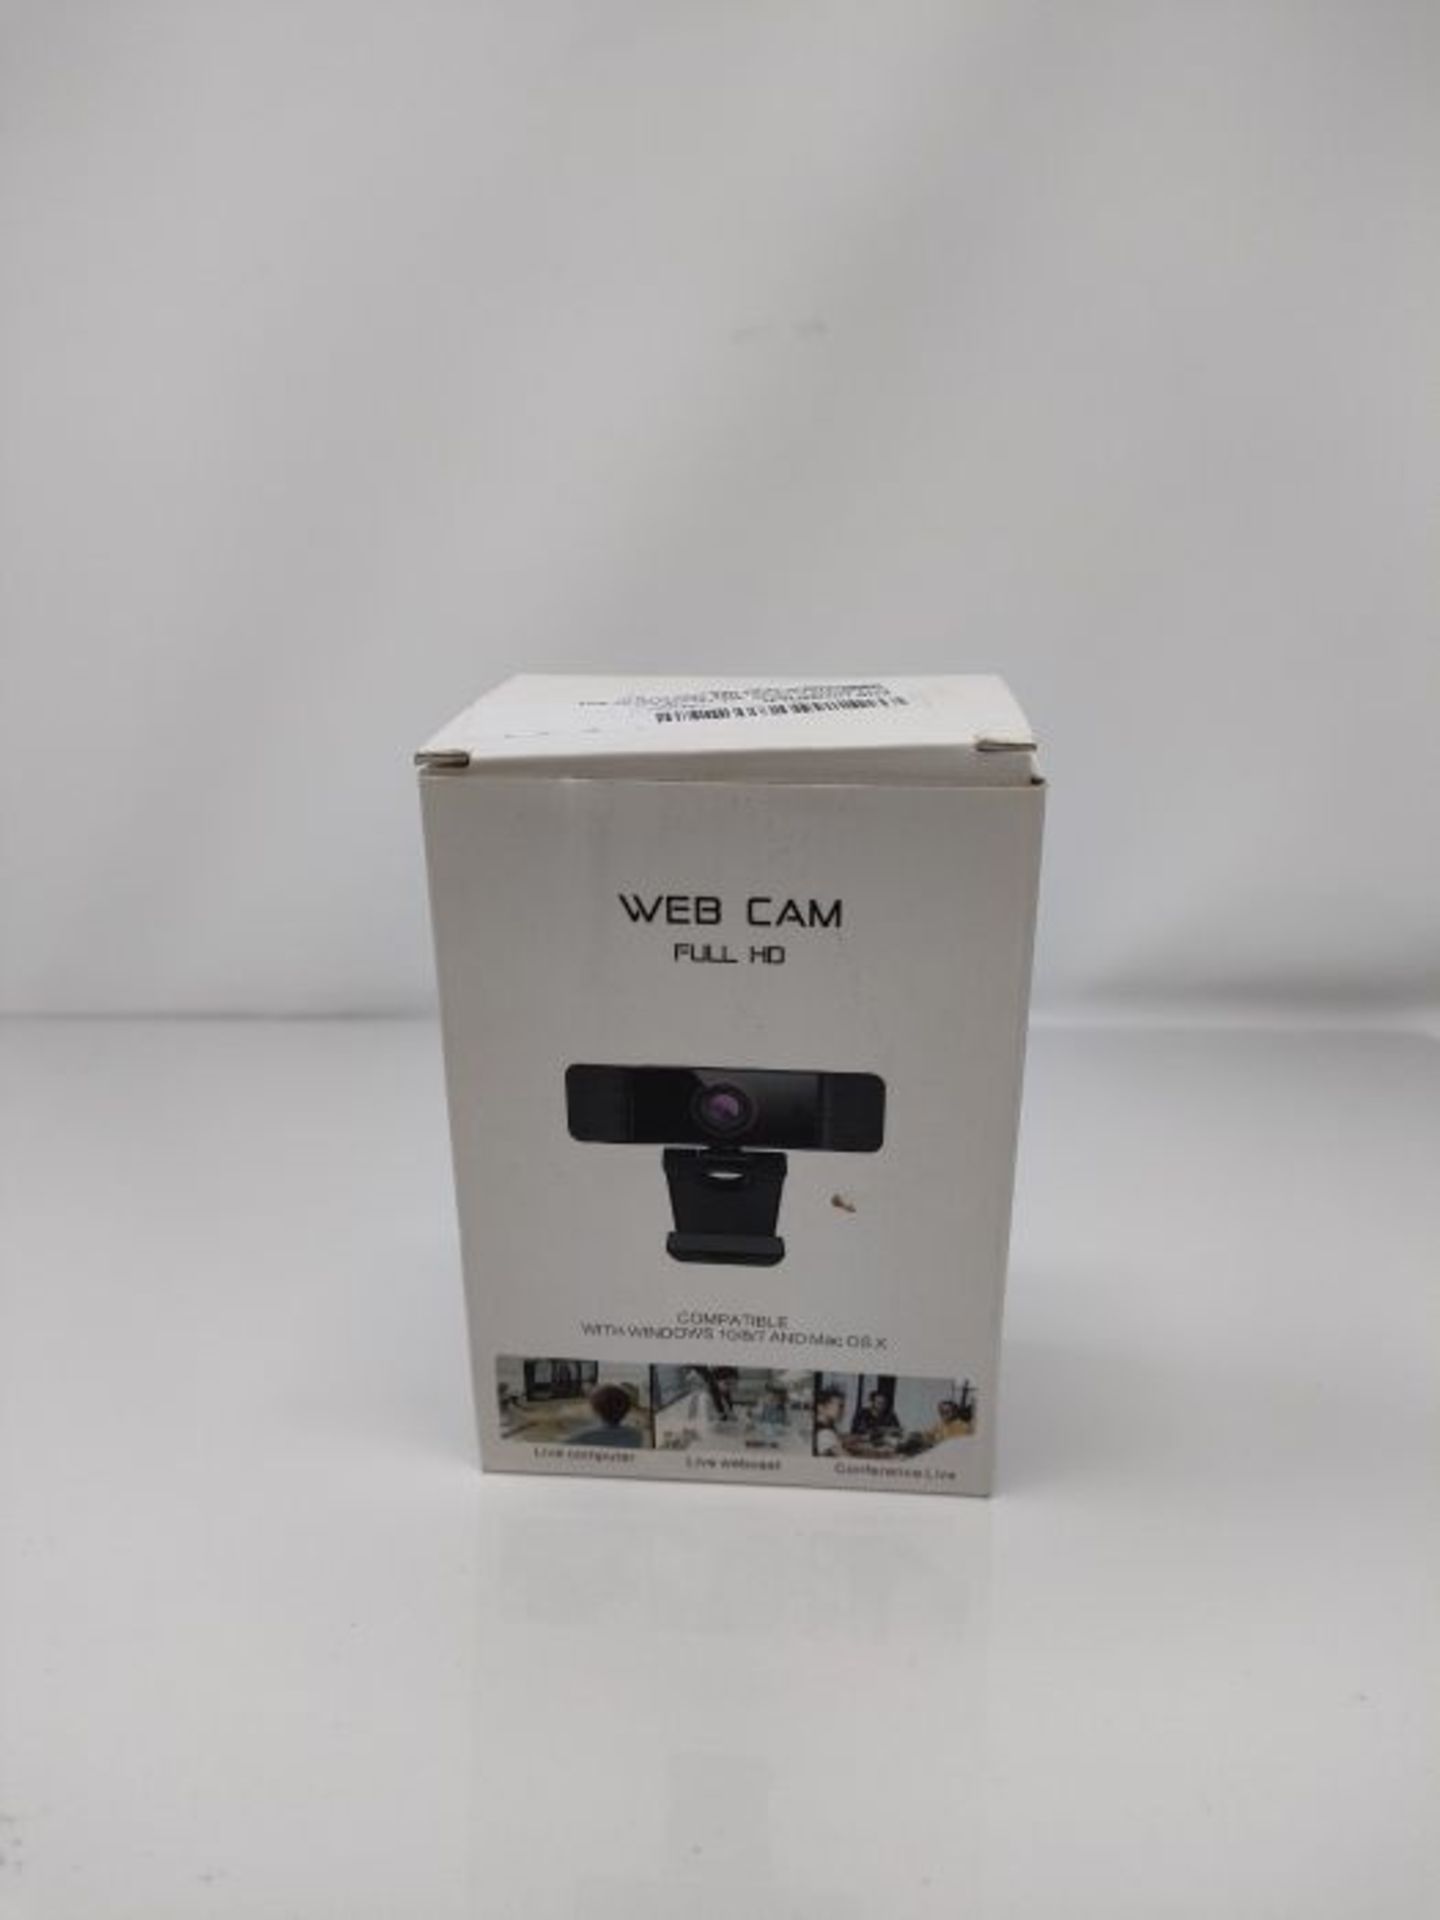 2021 AutoFocus 1080P Webcam with Microphone, Software and Privacy Cover, NexiGo N680 B - Image 2 of 3